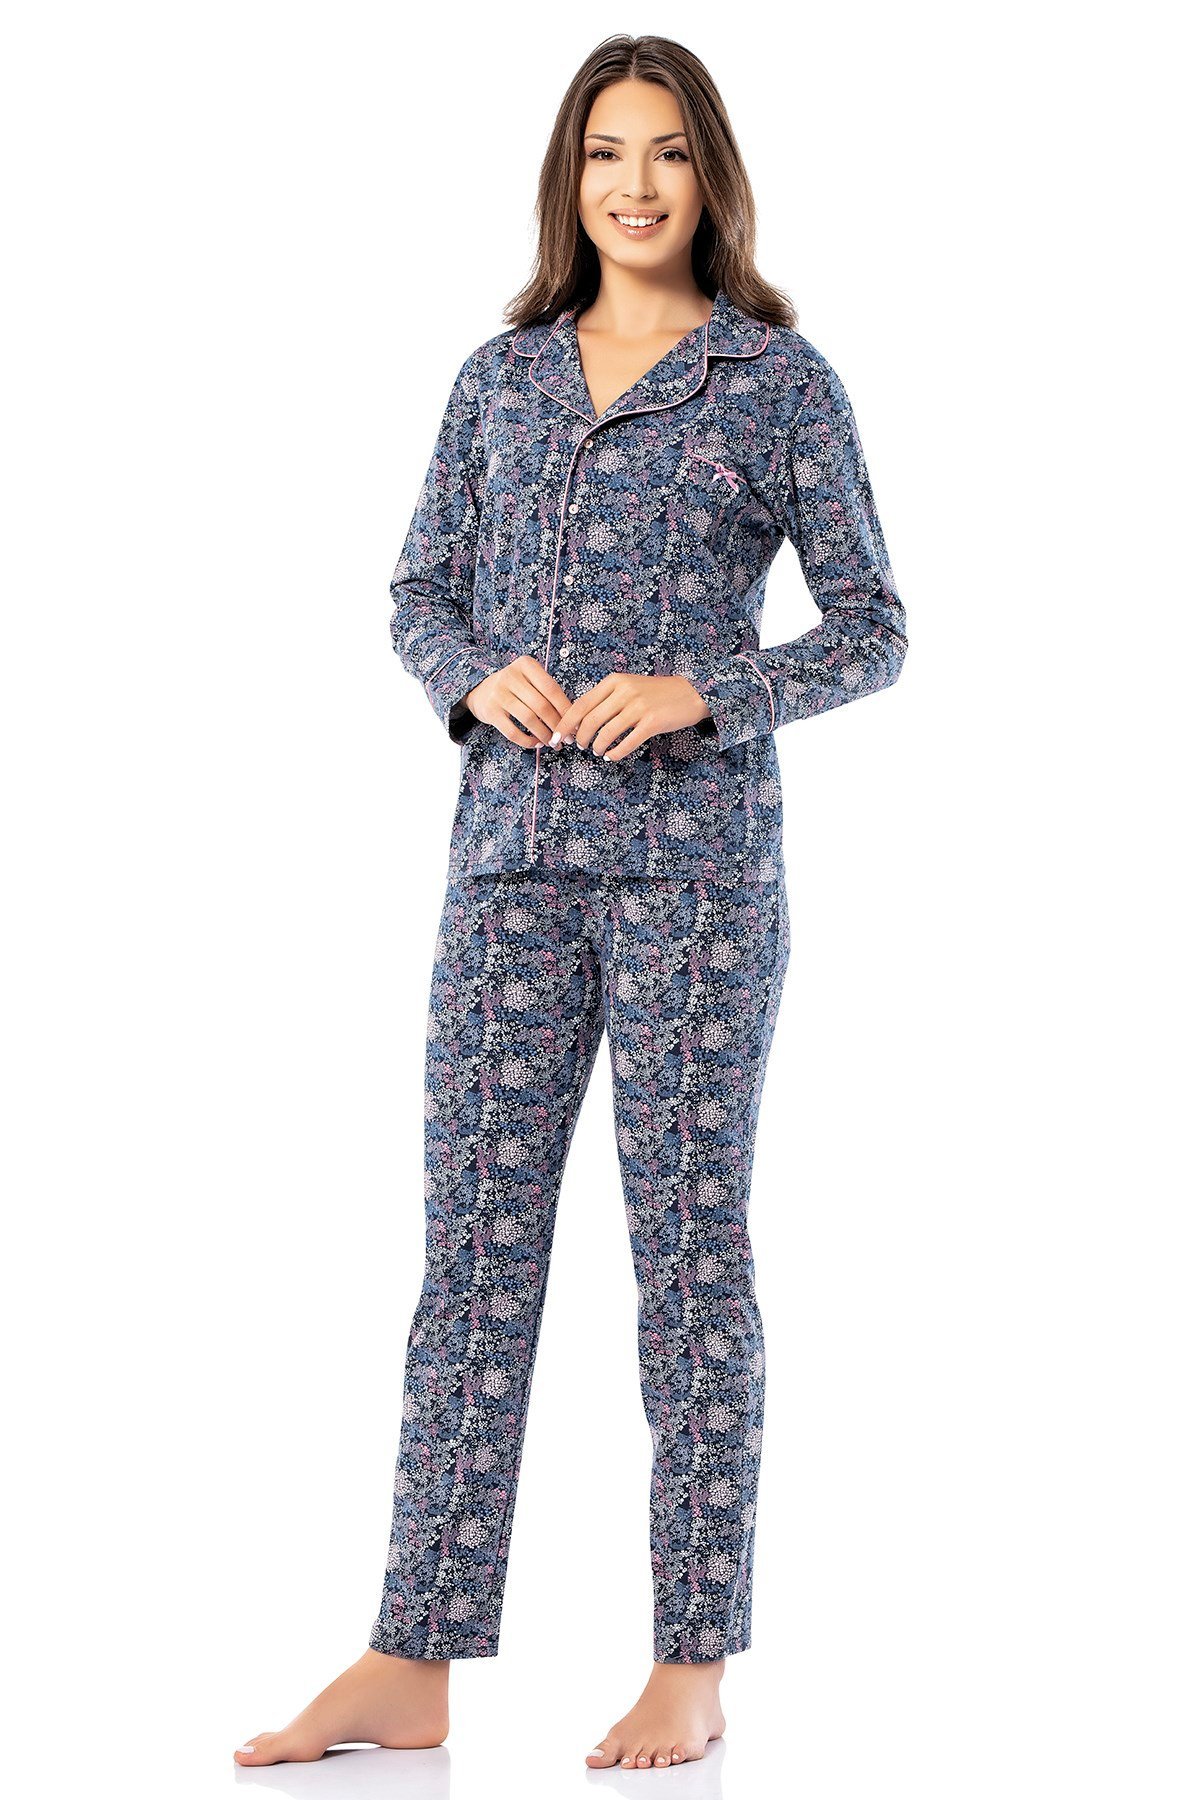 Erdem Kadın Kışlık Pijama Takımı: Erdem İç Giyim